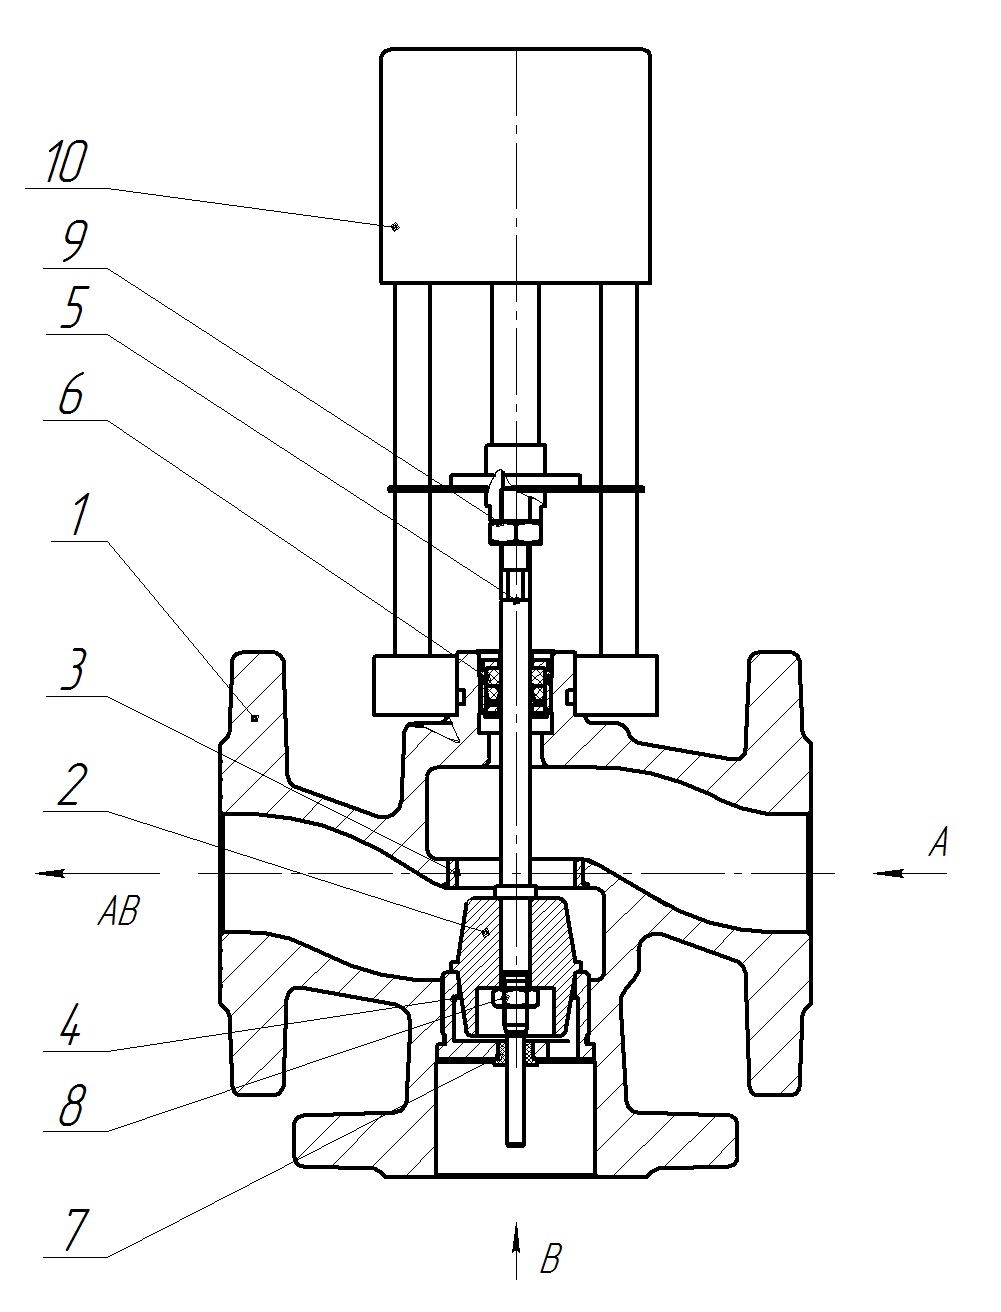 Клапан регулирующий трехходовой разделительный DN.ru 23ч901нж Ду25 Ру16 Kvs2,5 серый чугун СЧ20, фланцевый, Tmax до 150°С с электроприводом Катрабел TW-500-XD220